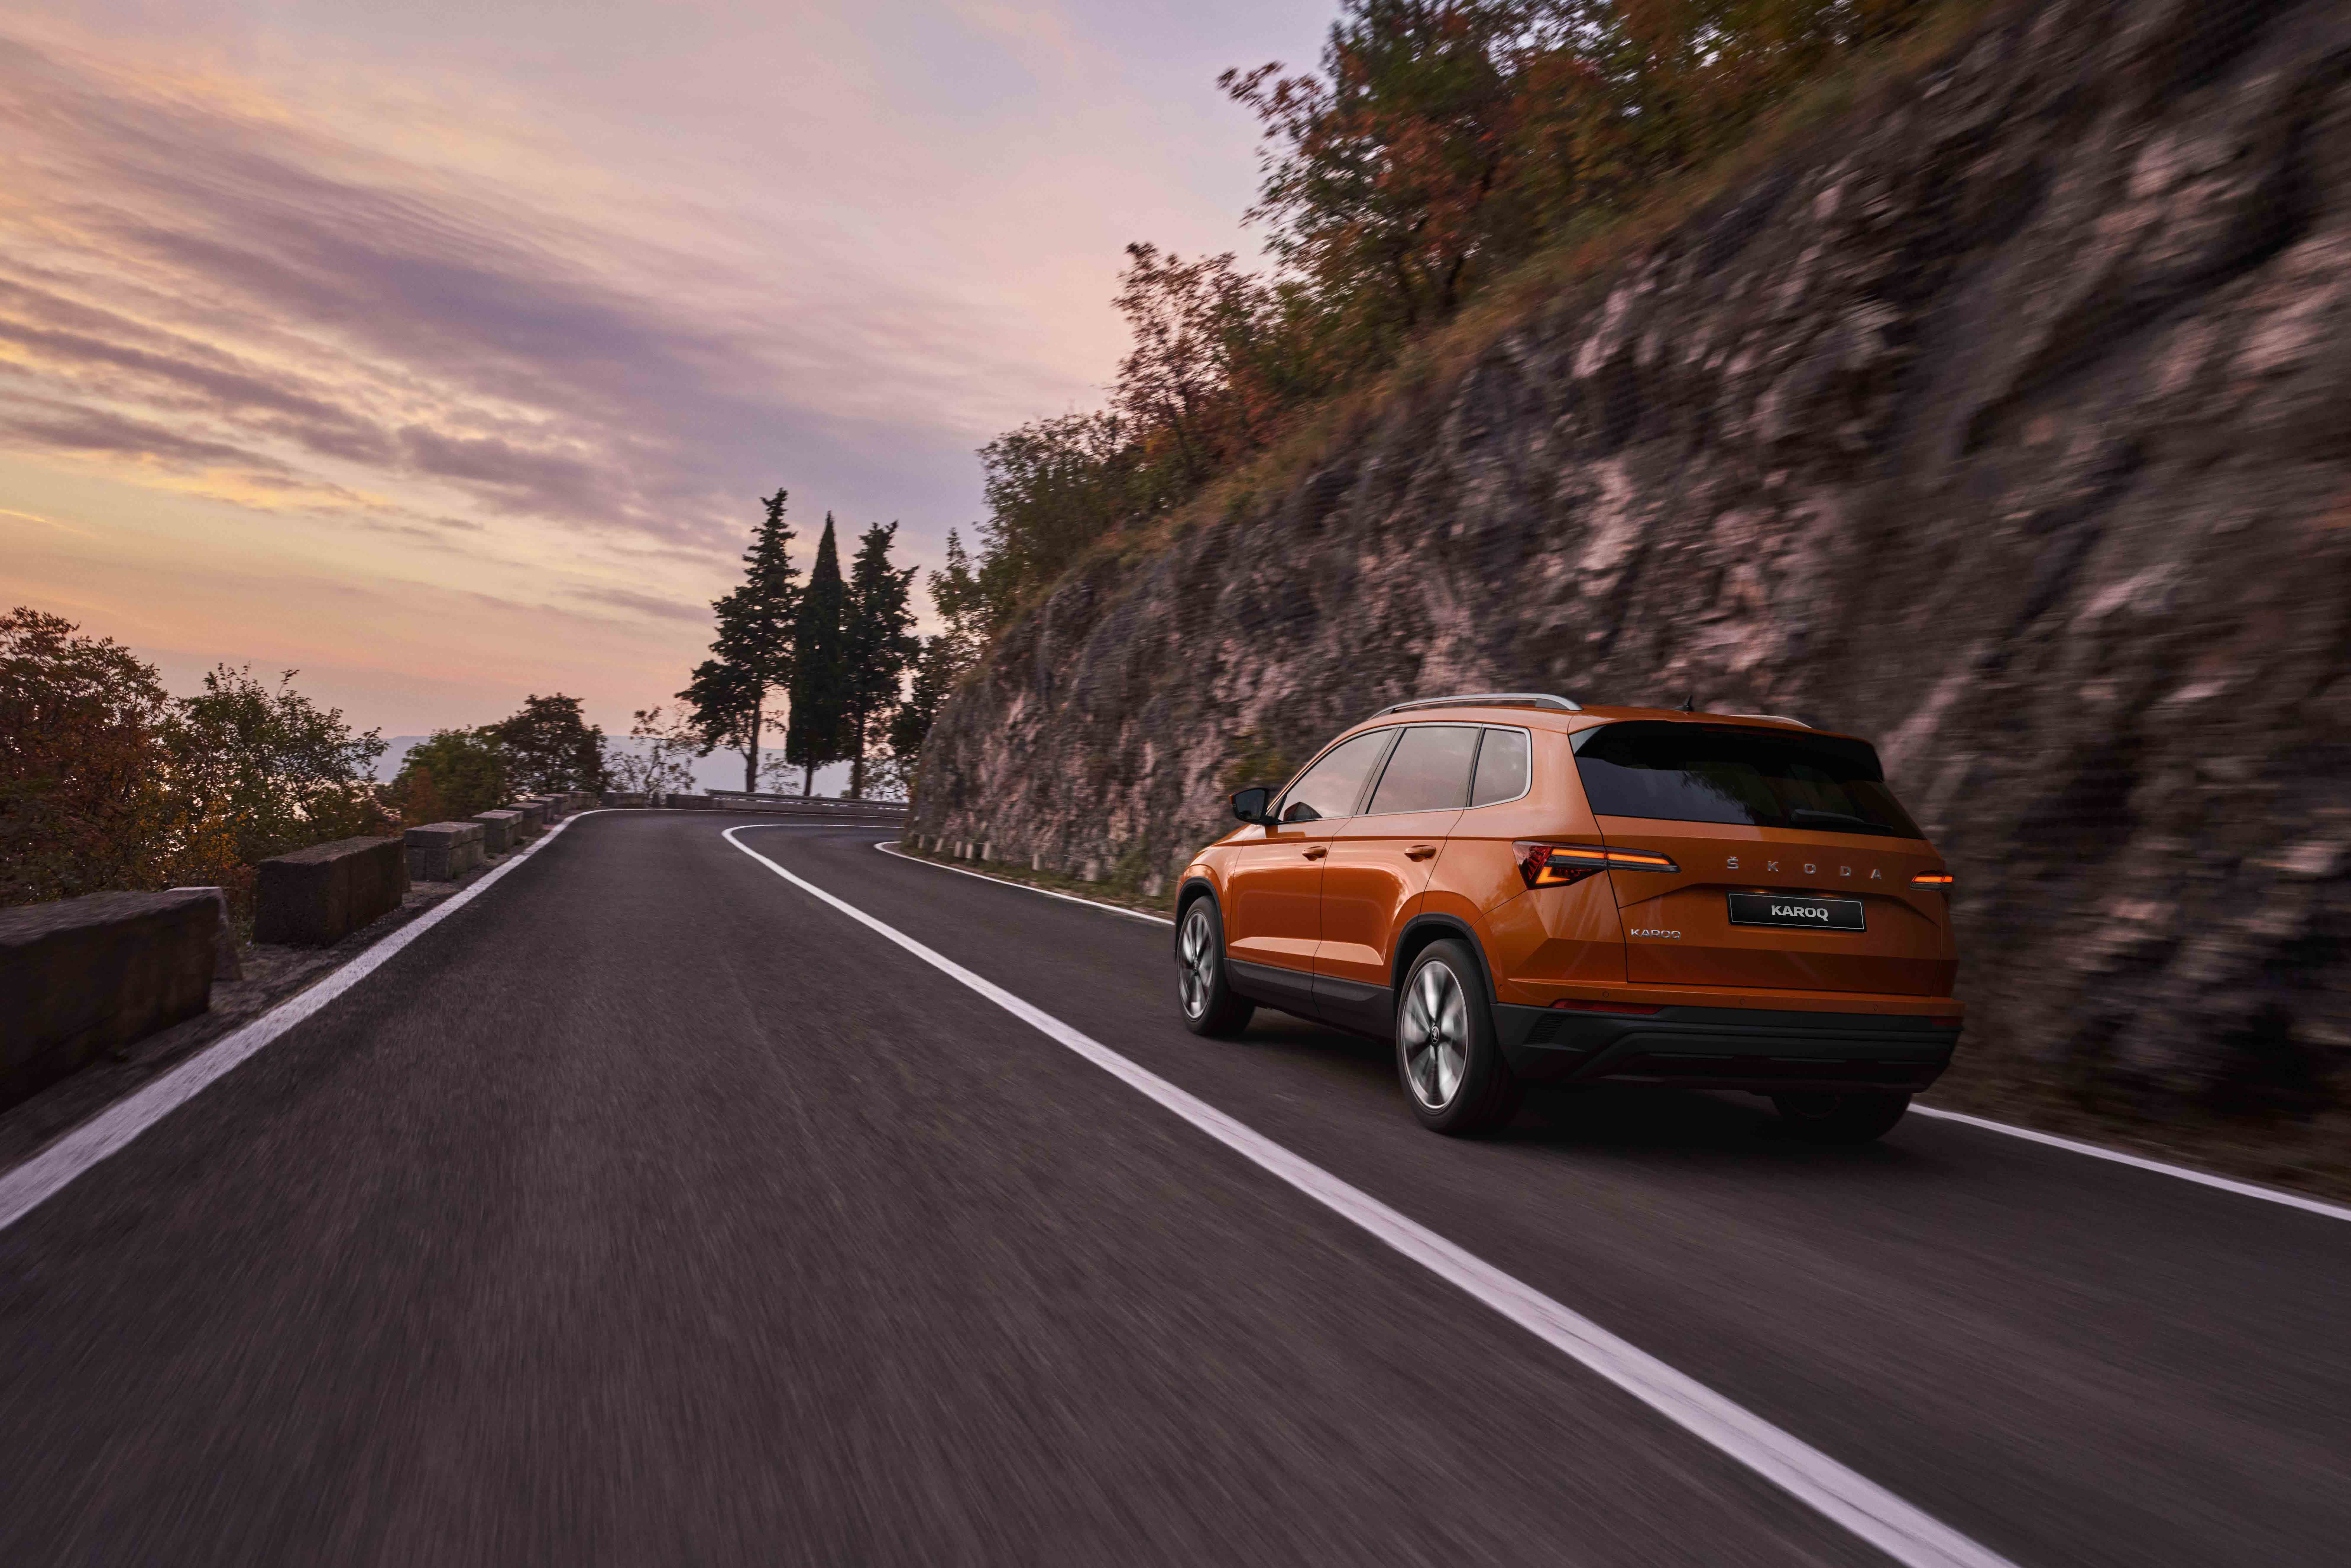 Rear view of Orange Škoda Karoq driving on scenic road